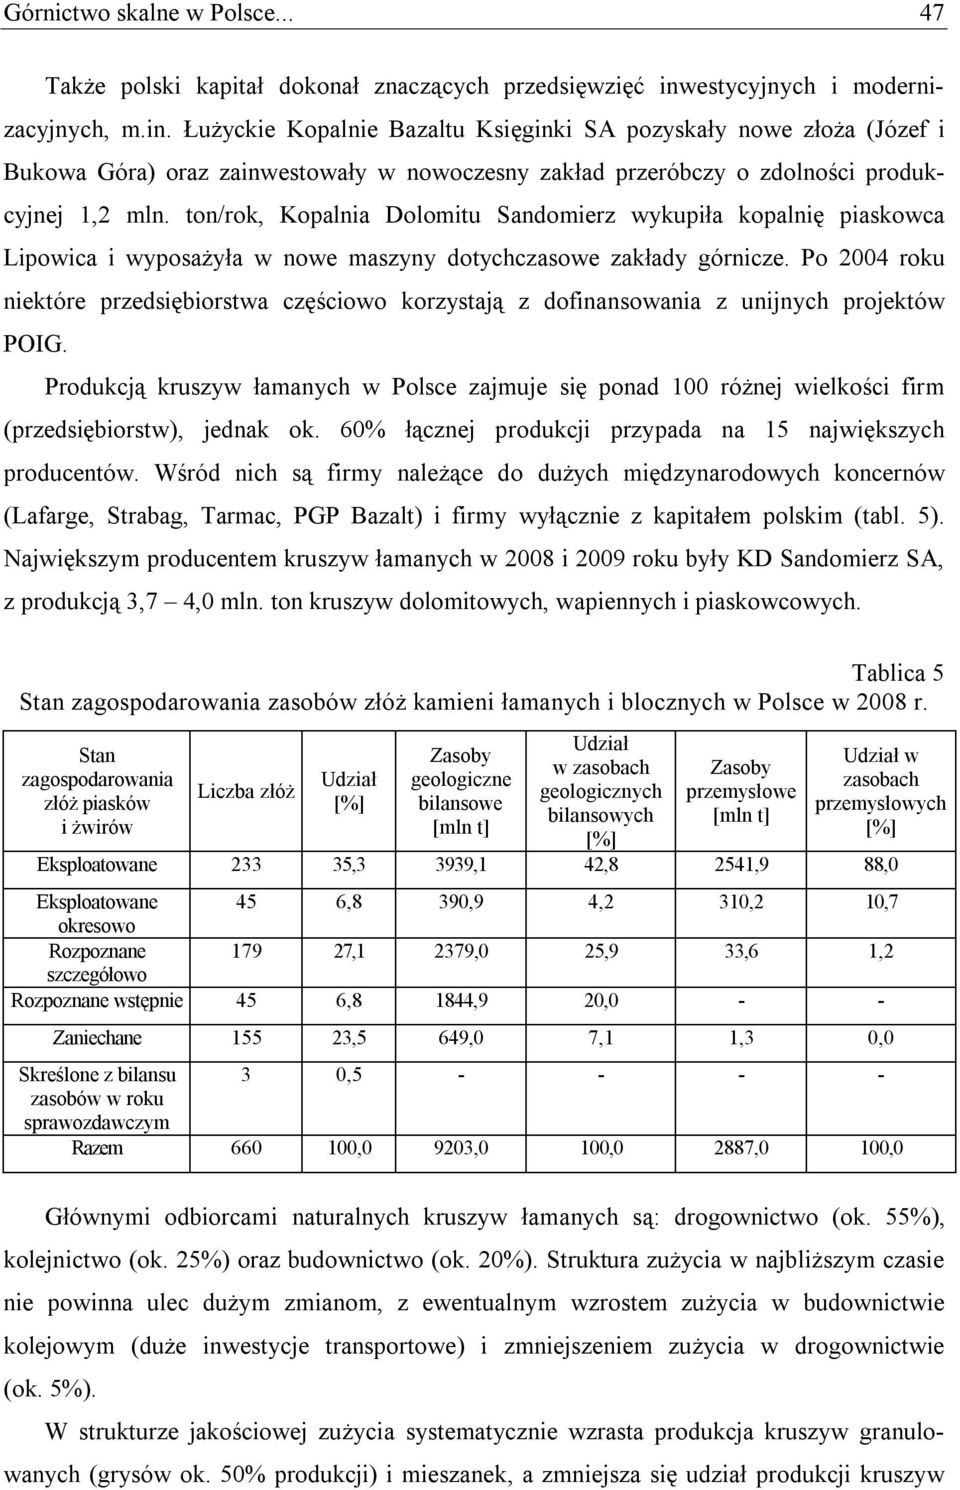 Łużyckie Kopalnie Bazaltu Księginki SA pozyskały nowe złoża (Józef i Bukowa Góra) oraz zainwestowały w nowoczesny zakład przeróbczy o zdolności produkcyjnej 1,2 mln.